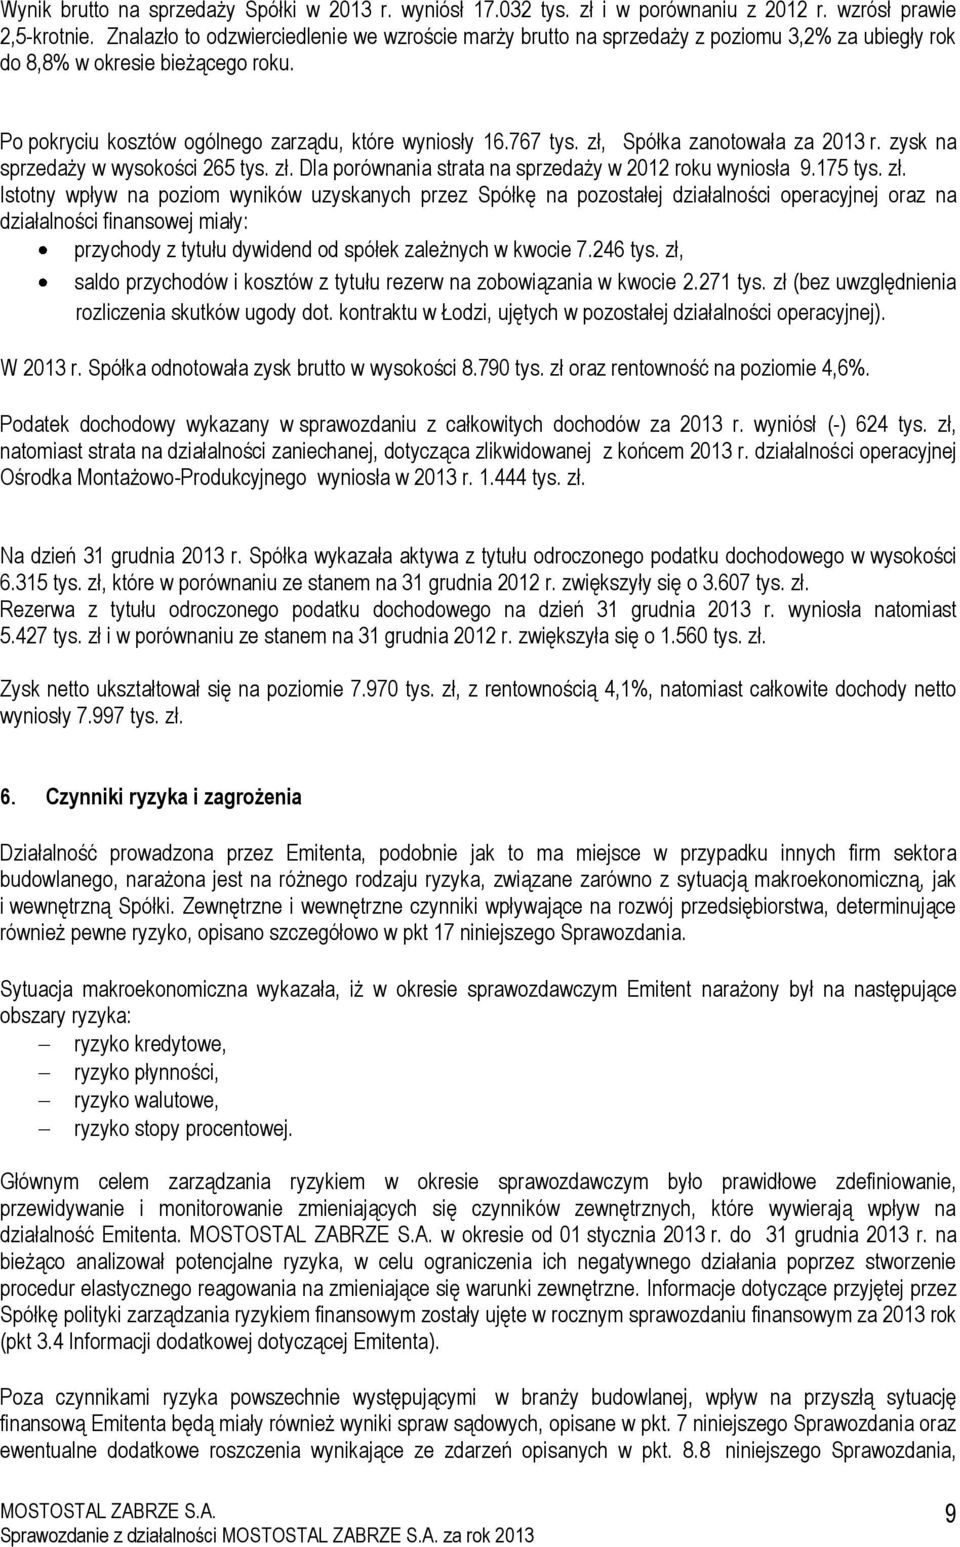 zł, Spółka zanotowała za 2013 r. zysk na sprzedaży w wysokości 265 tys. zł.